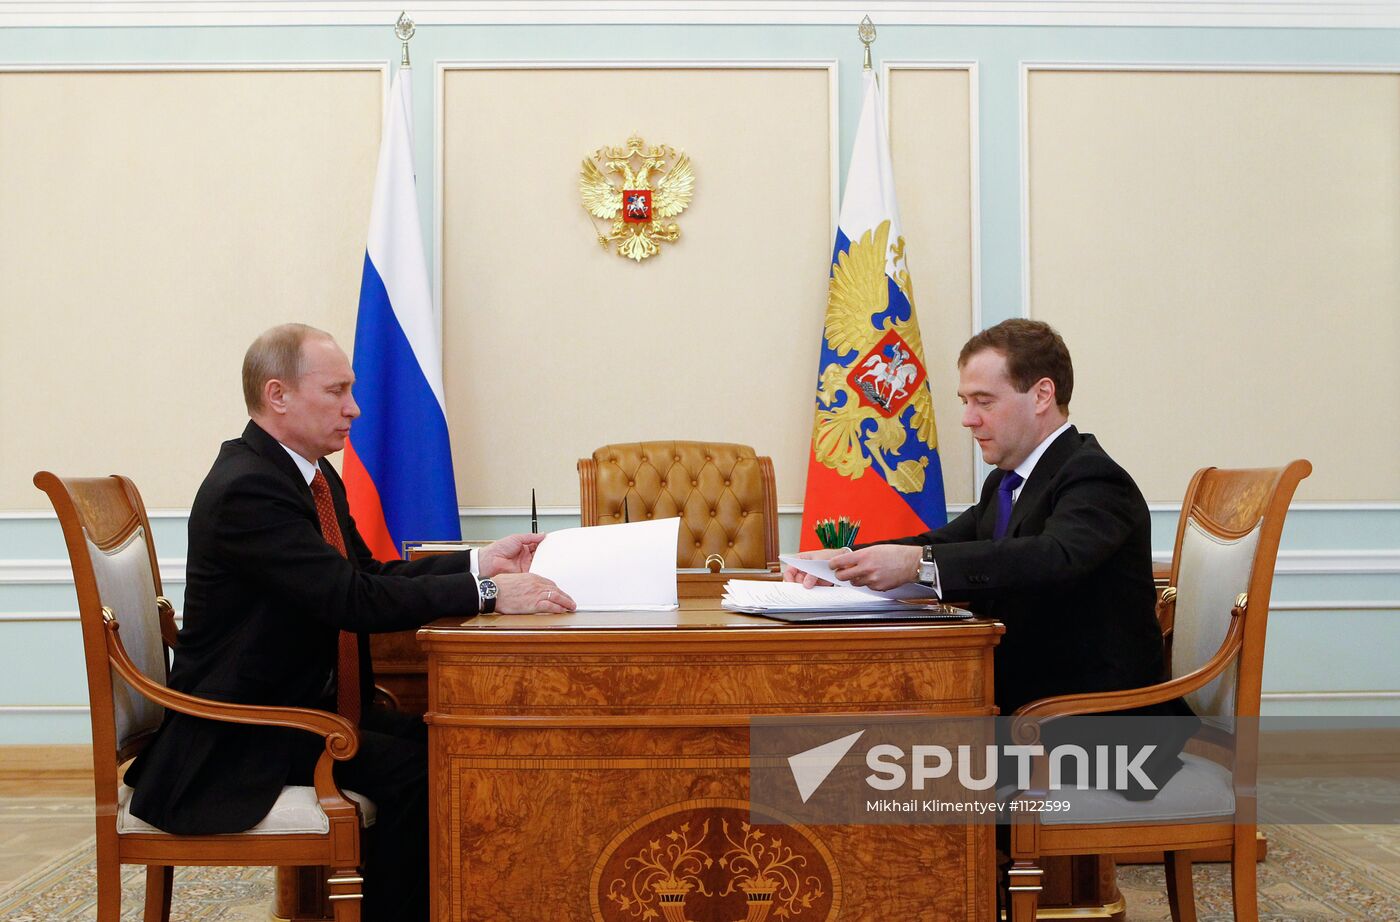 Putin, Medvedev meet in Kremlin